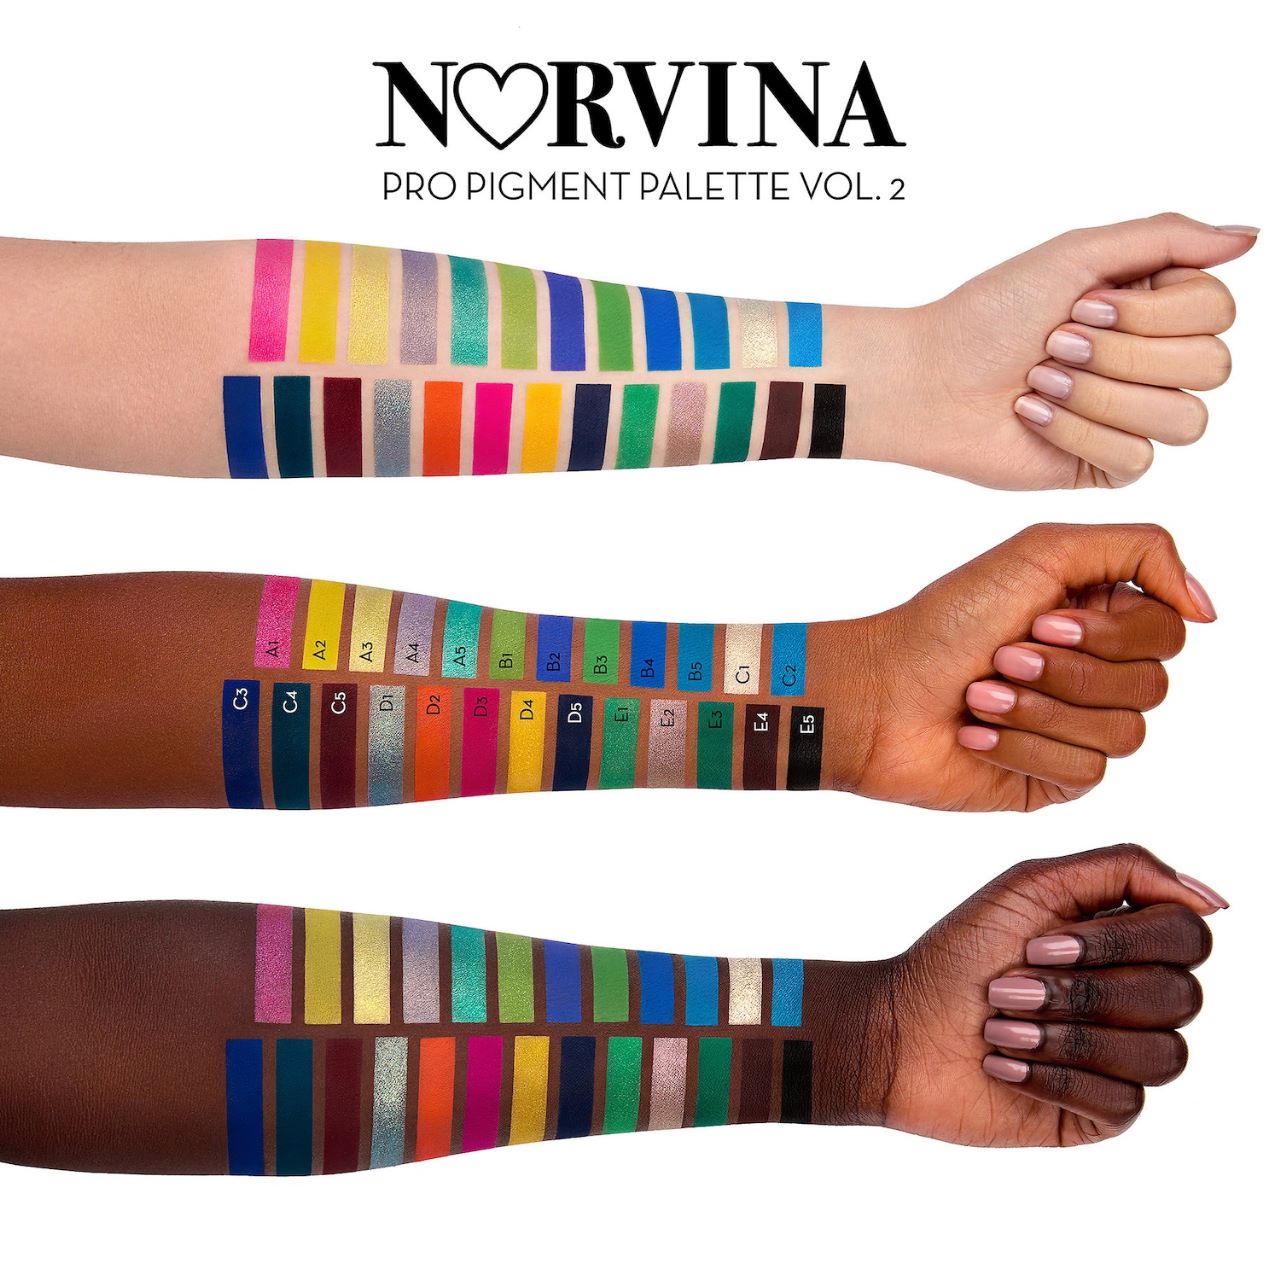 Norvina Pro Pigment Palette Vol. 2